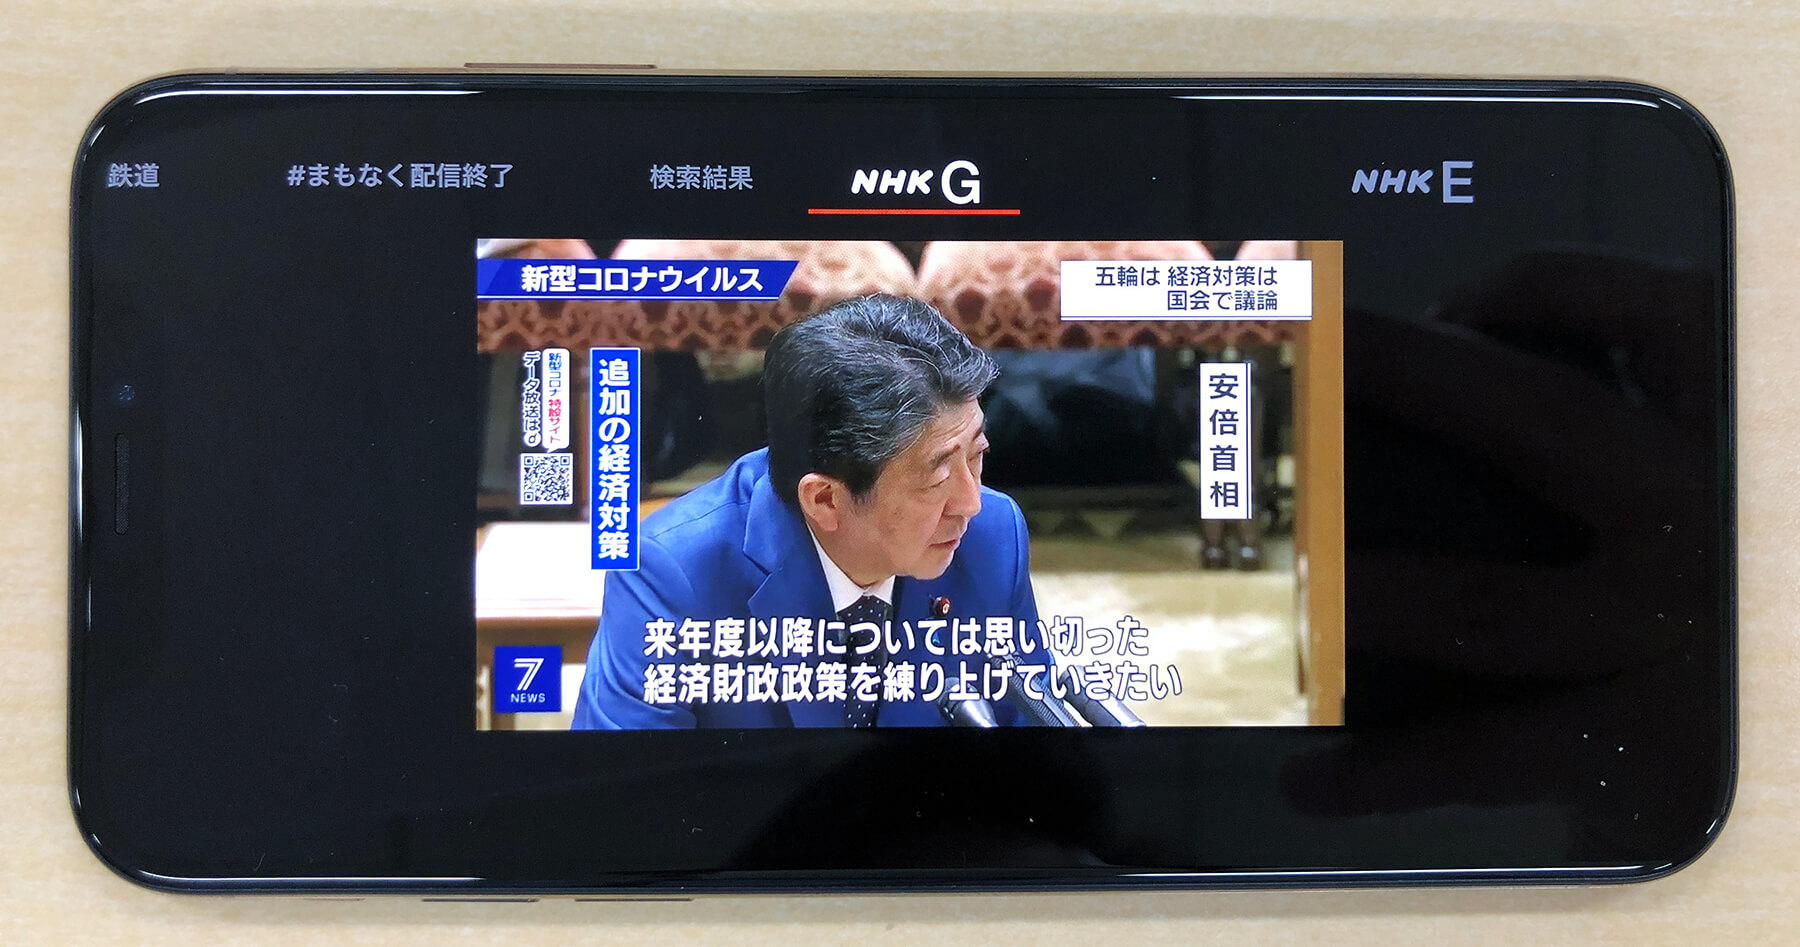 スマホ版「NHKプラス」の使い方。1週間分の見逃し番組をいつでも視聴できる